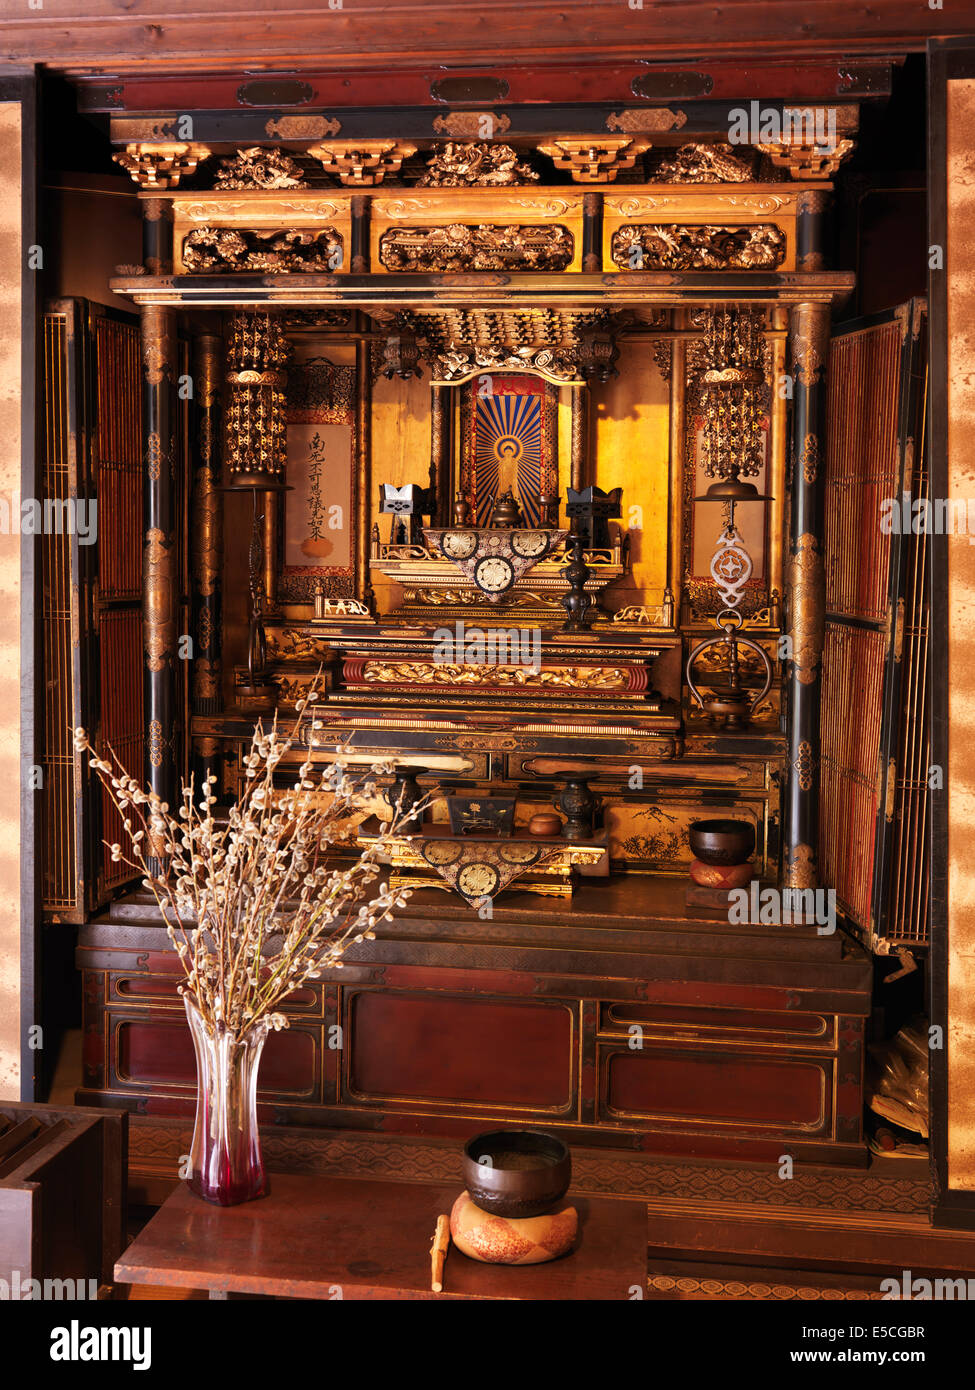 Altar budista fotografías e imágenes de alta resolución - Alamy